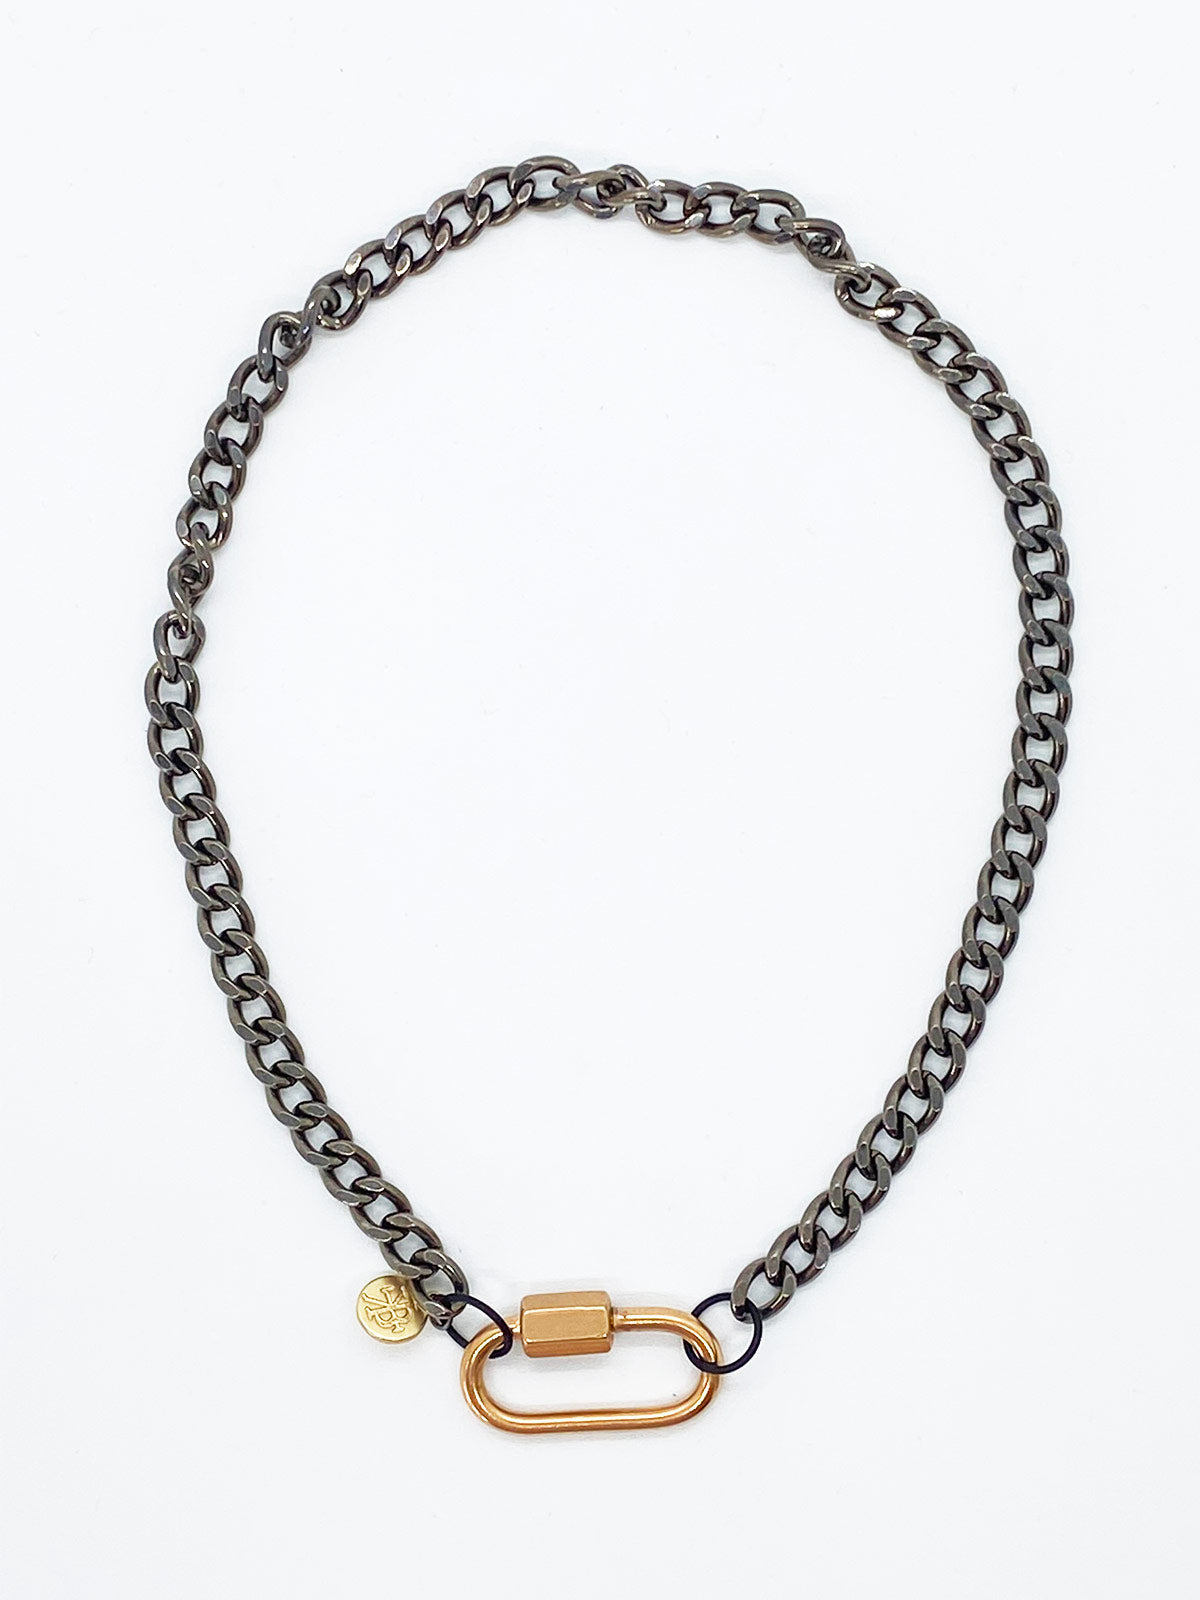 Pinola Chain Necklace | D' Nona Shop Boutique